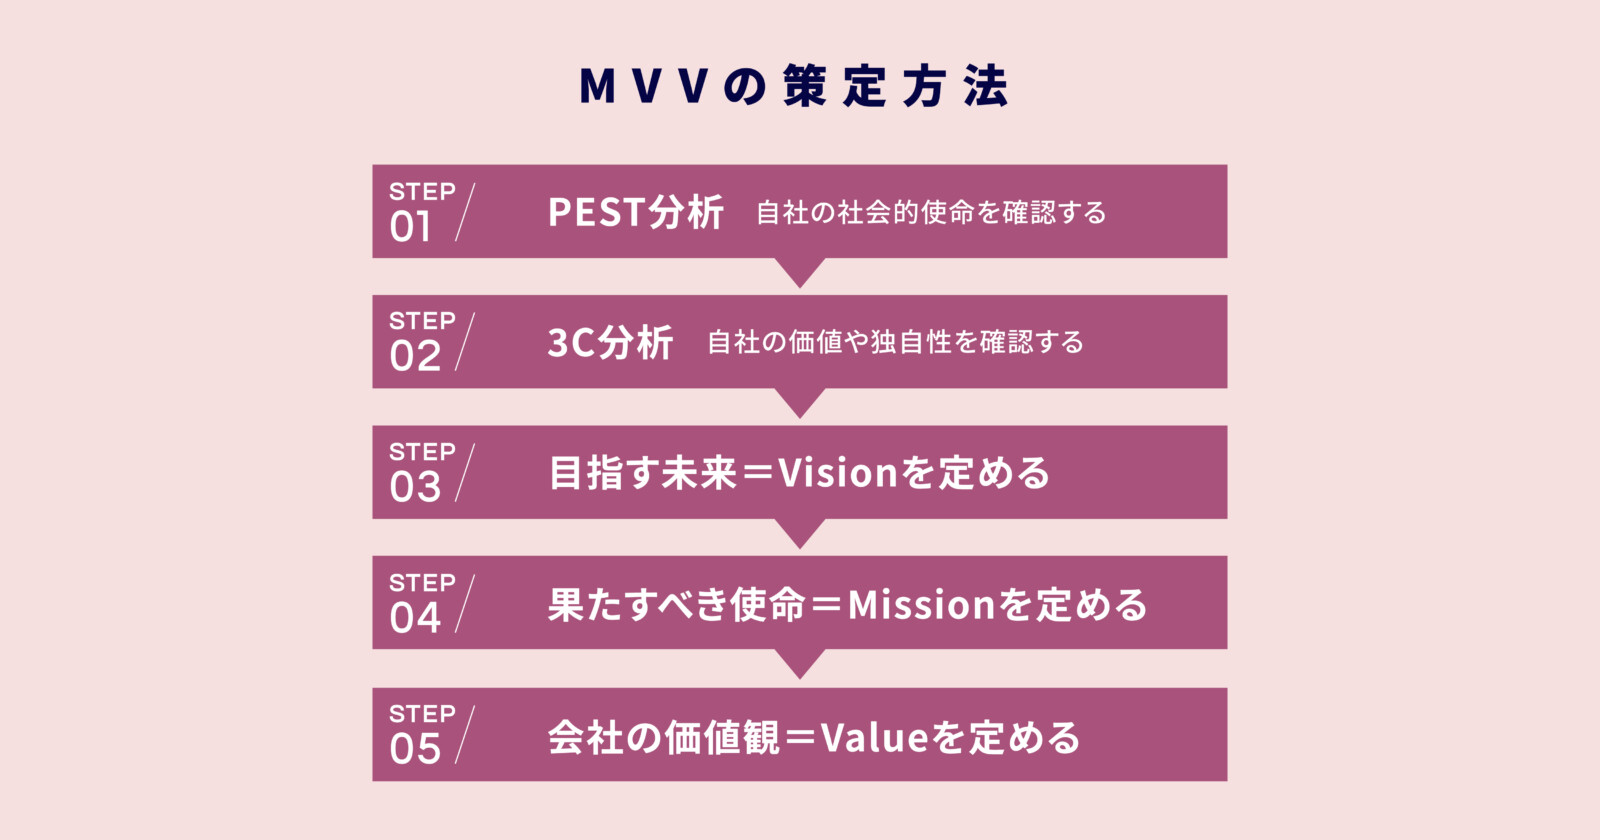 Mission / Vision / Valueの設定方法！お飾りにならないための実践型MVV導入！